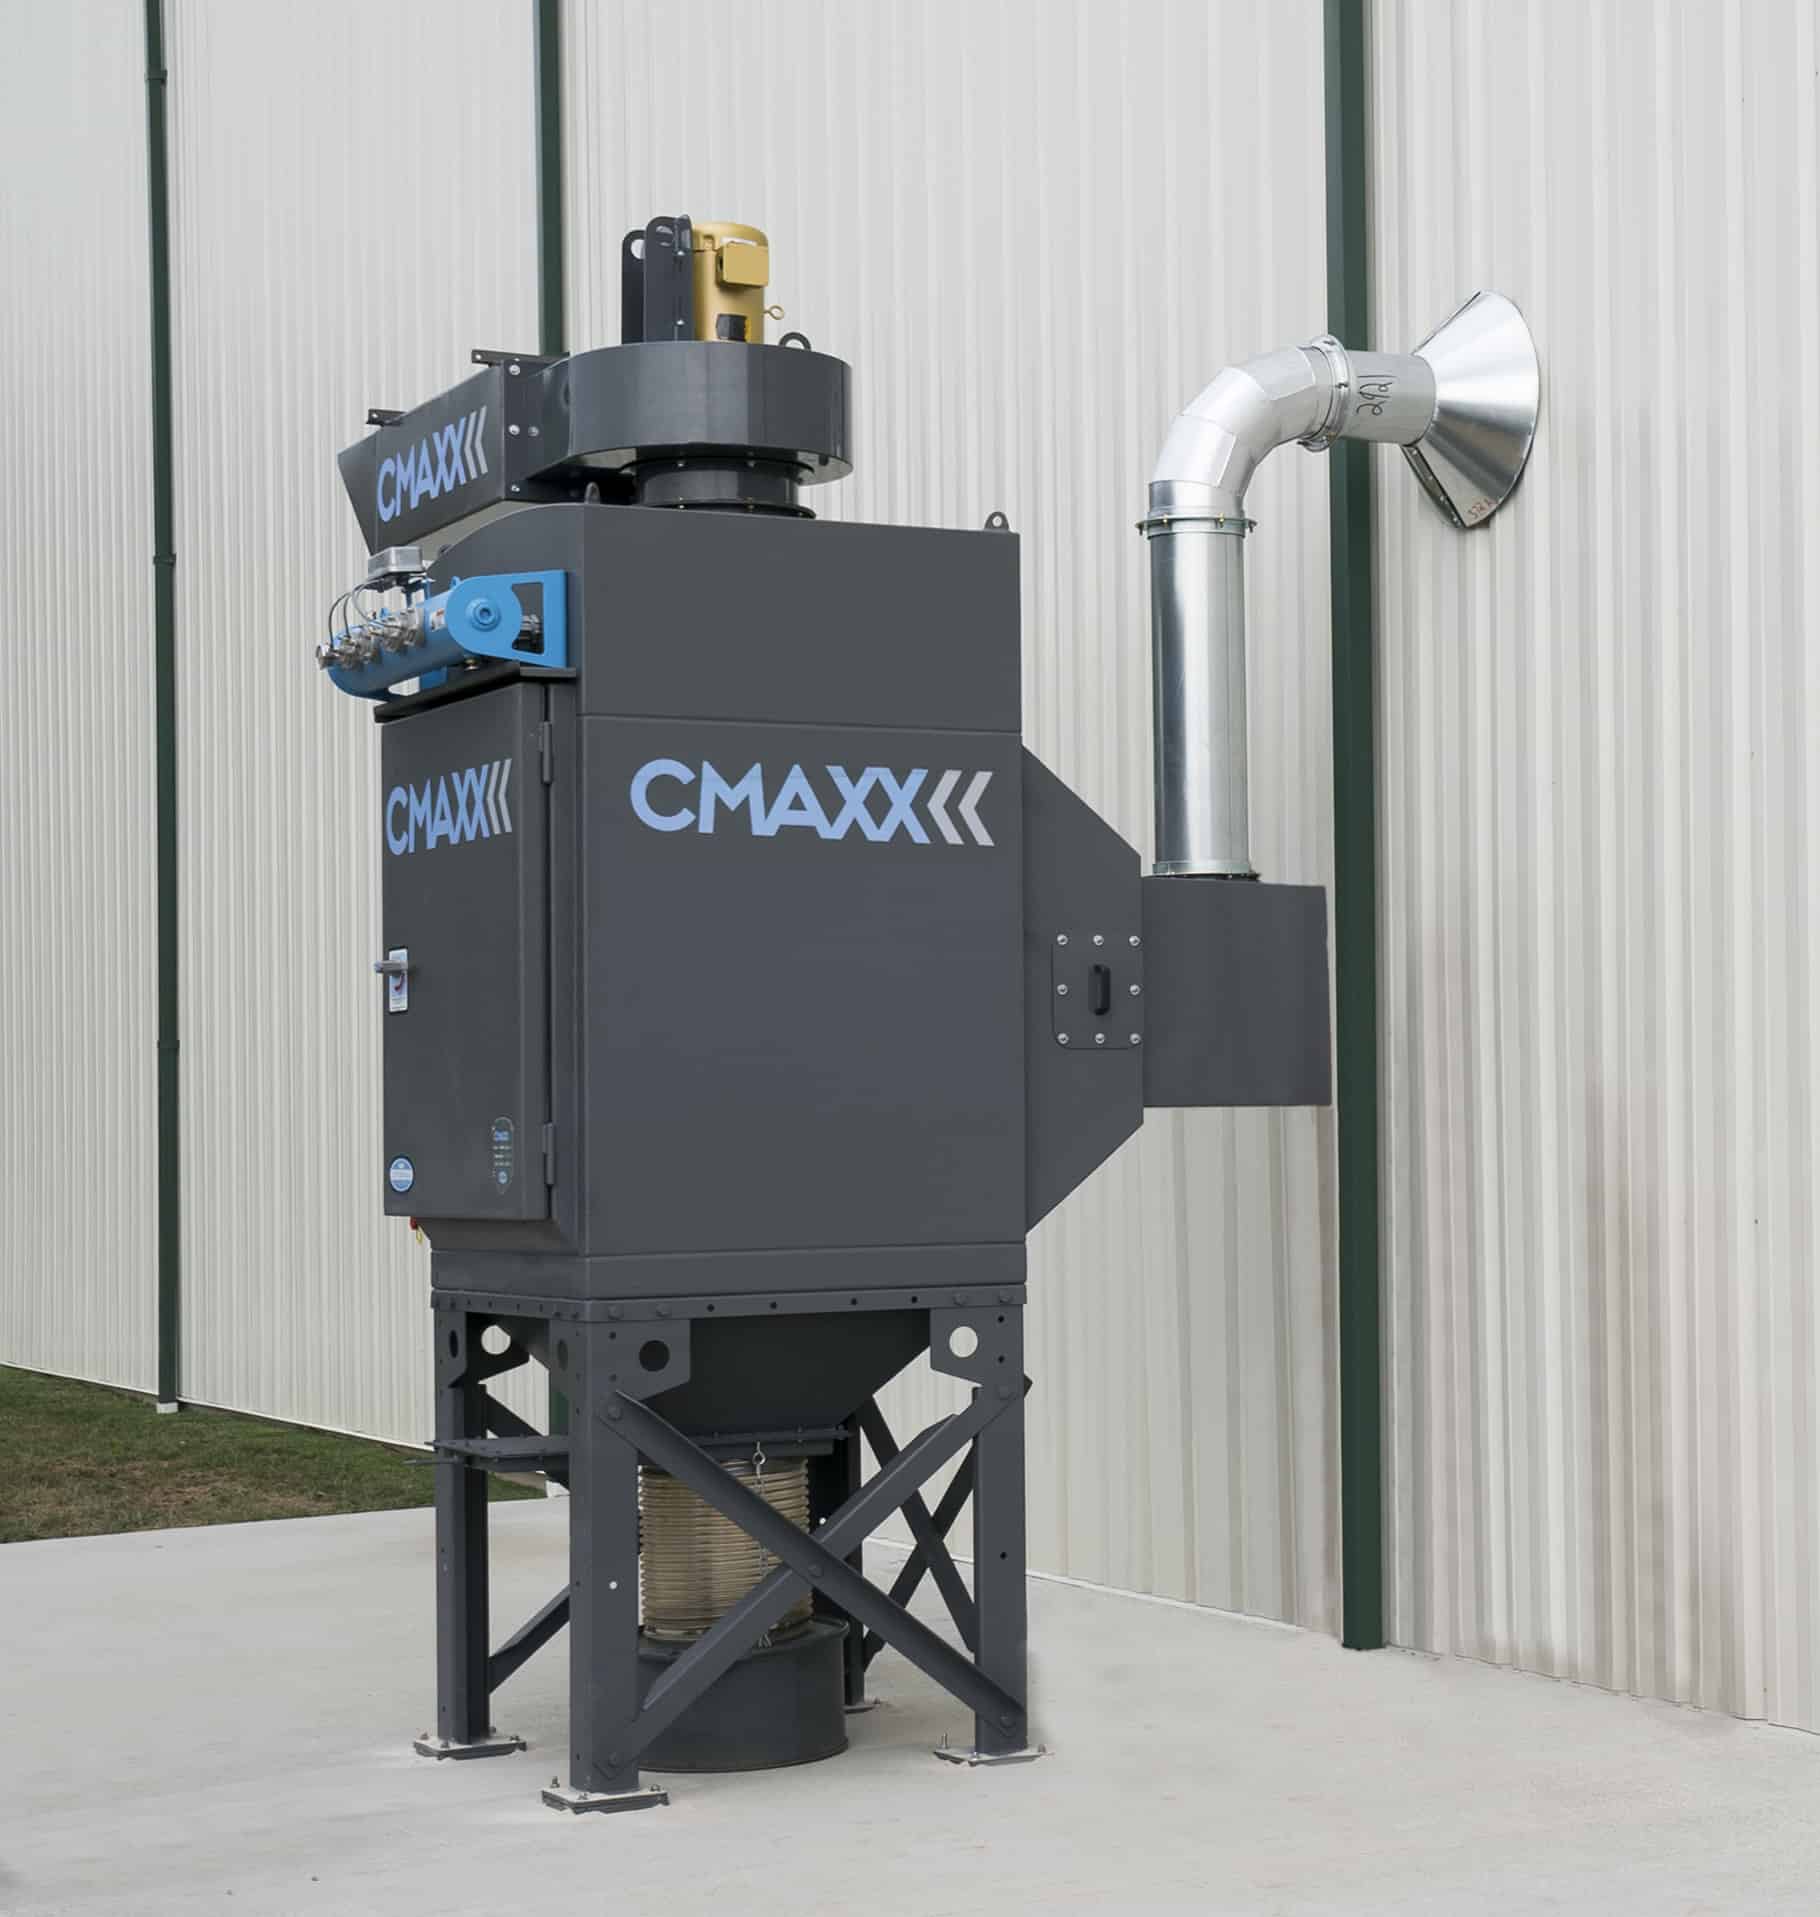 CMAXX metal cutting fume extractor